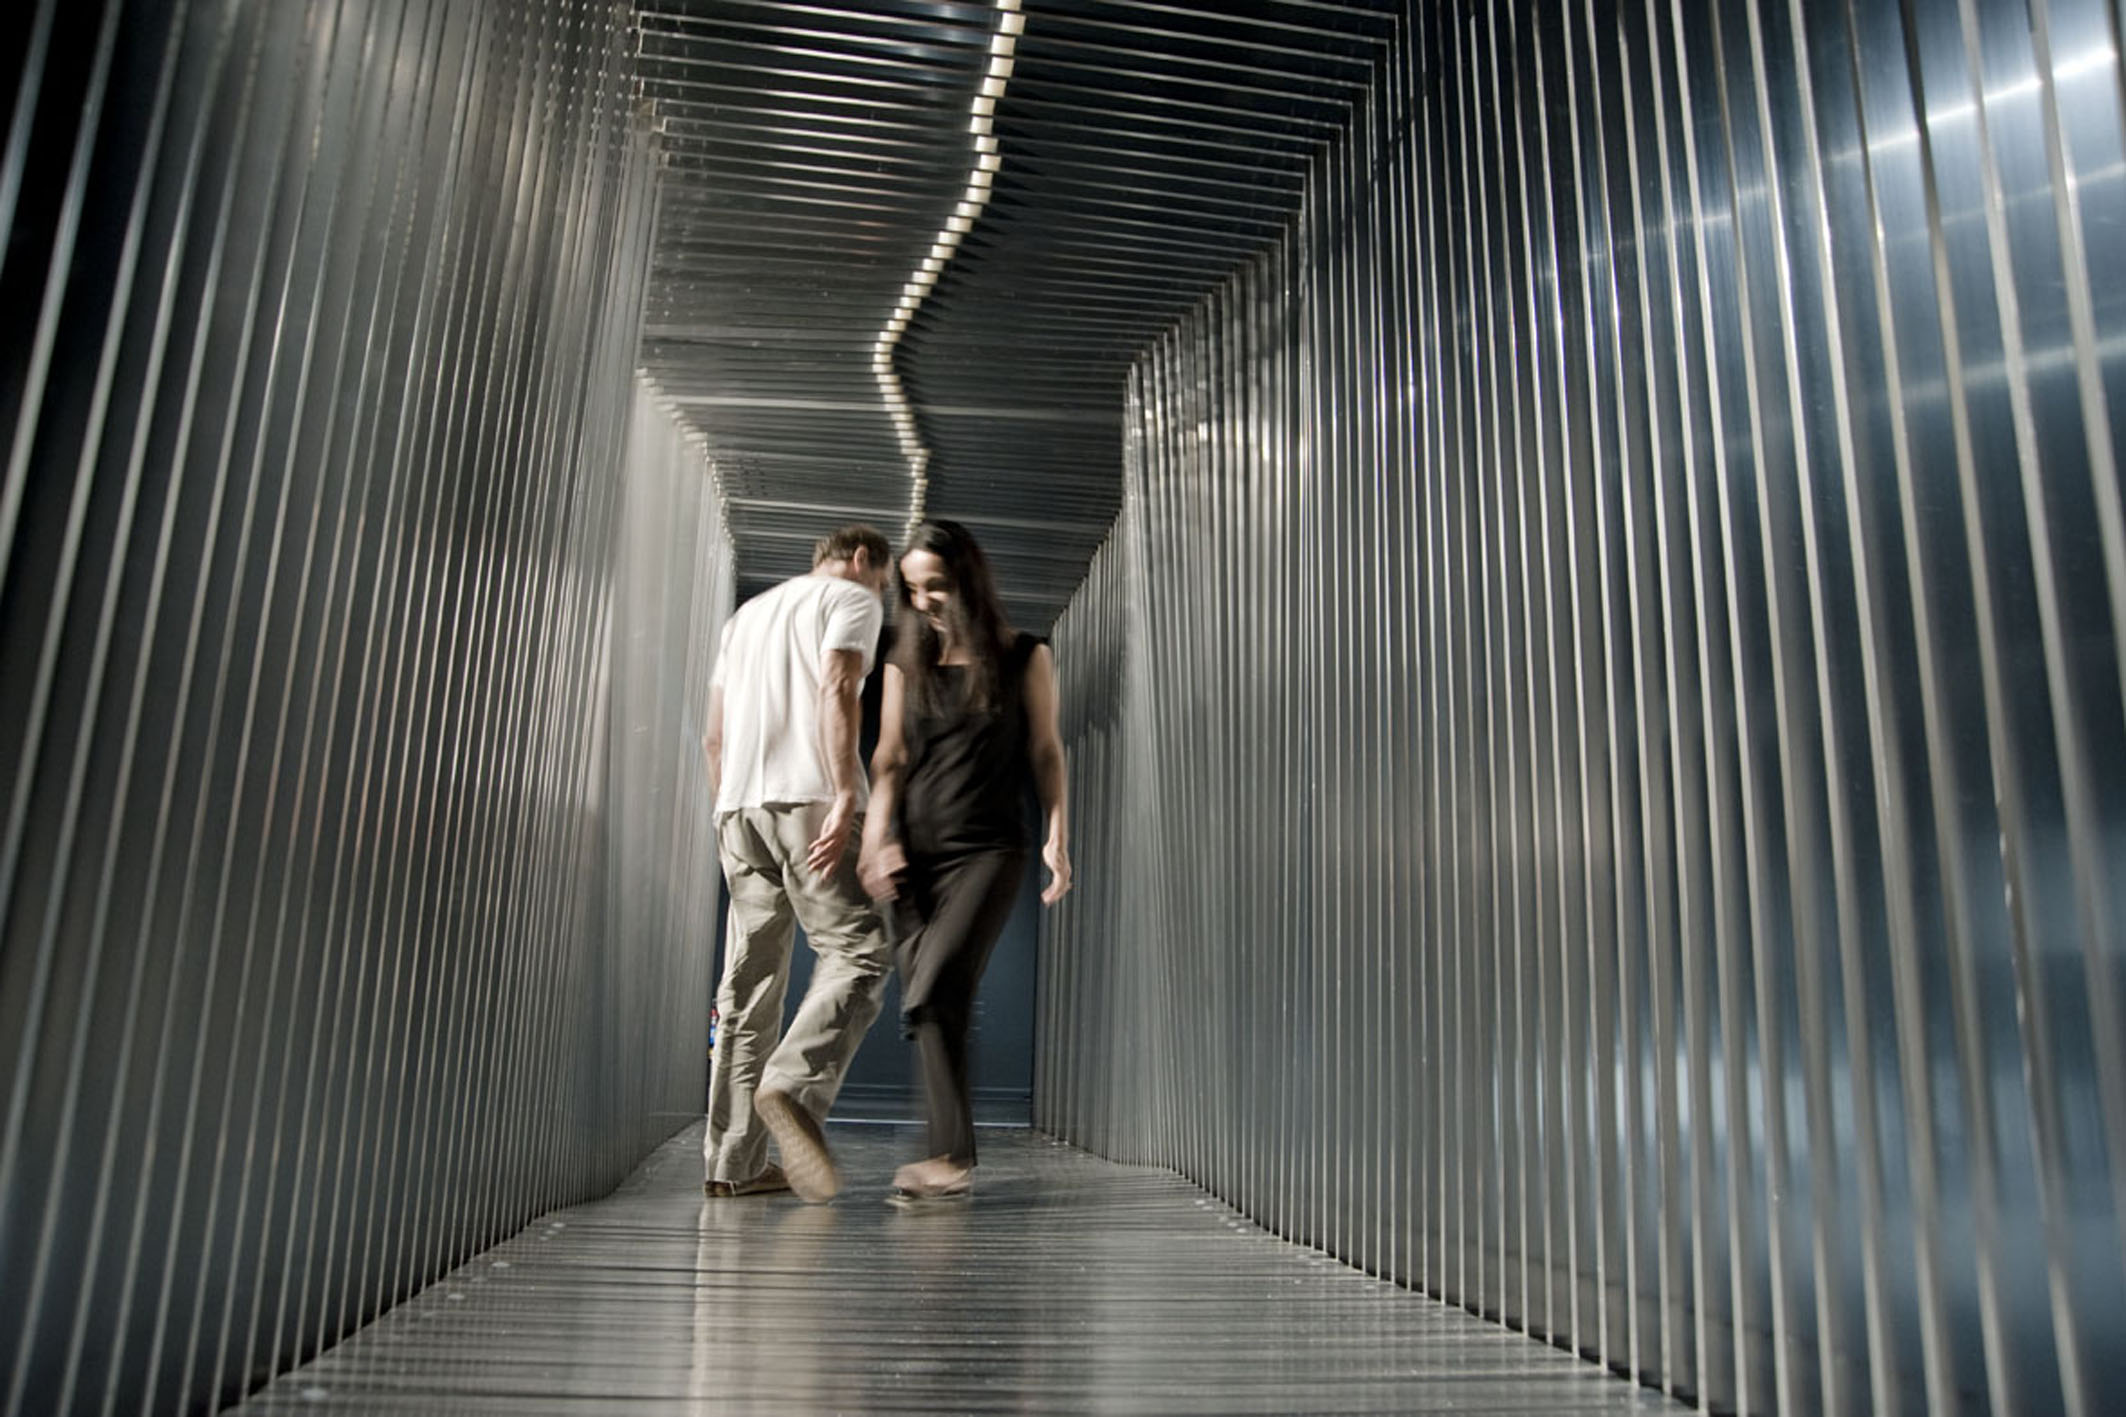    tunnel | túnel    @ museu de arte b. da faap 2010   + expo  